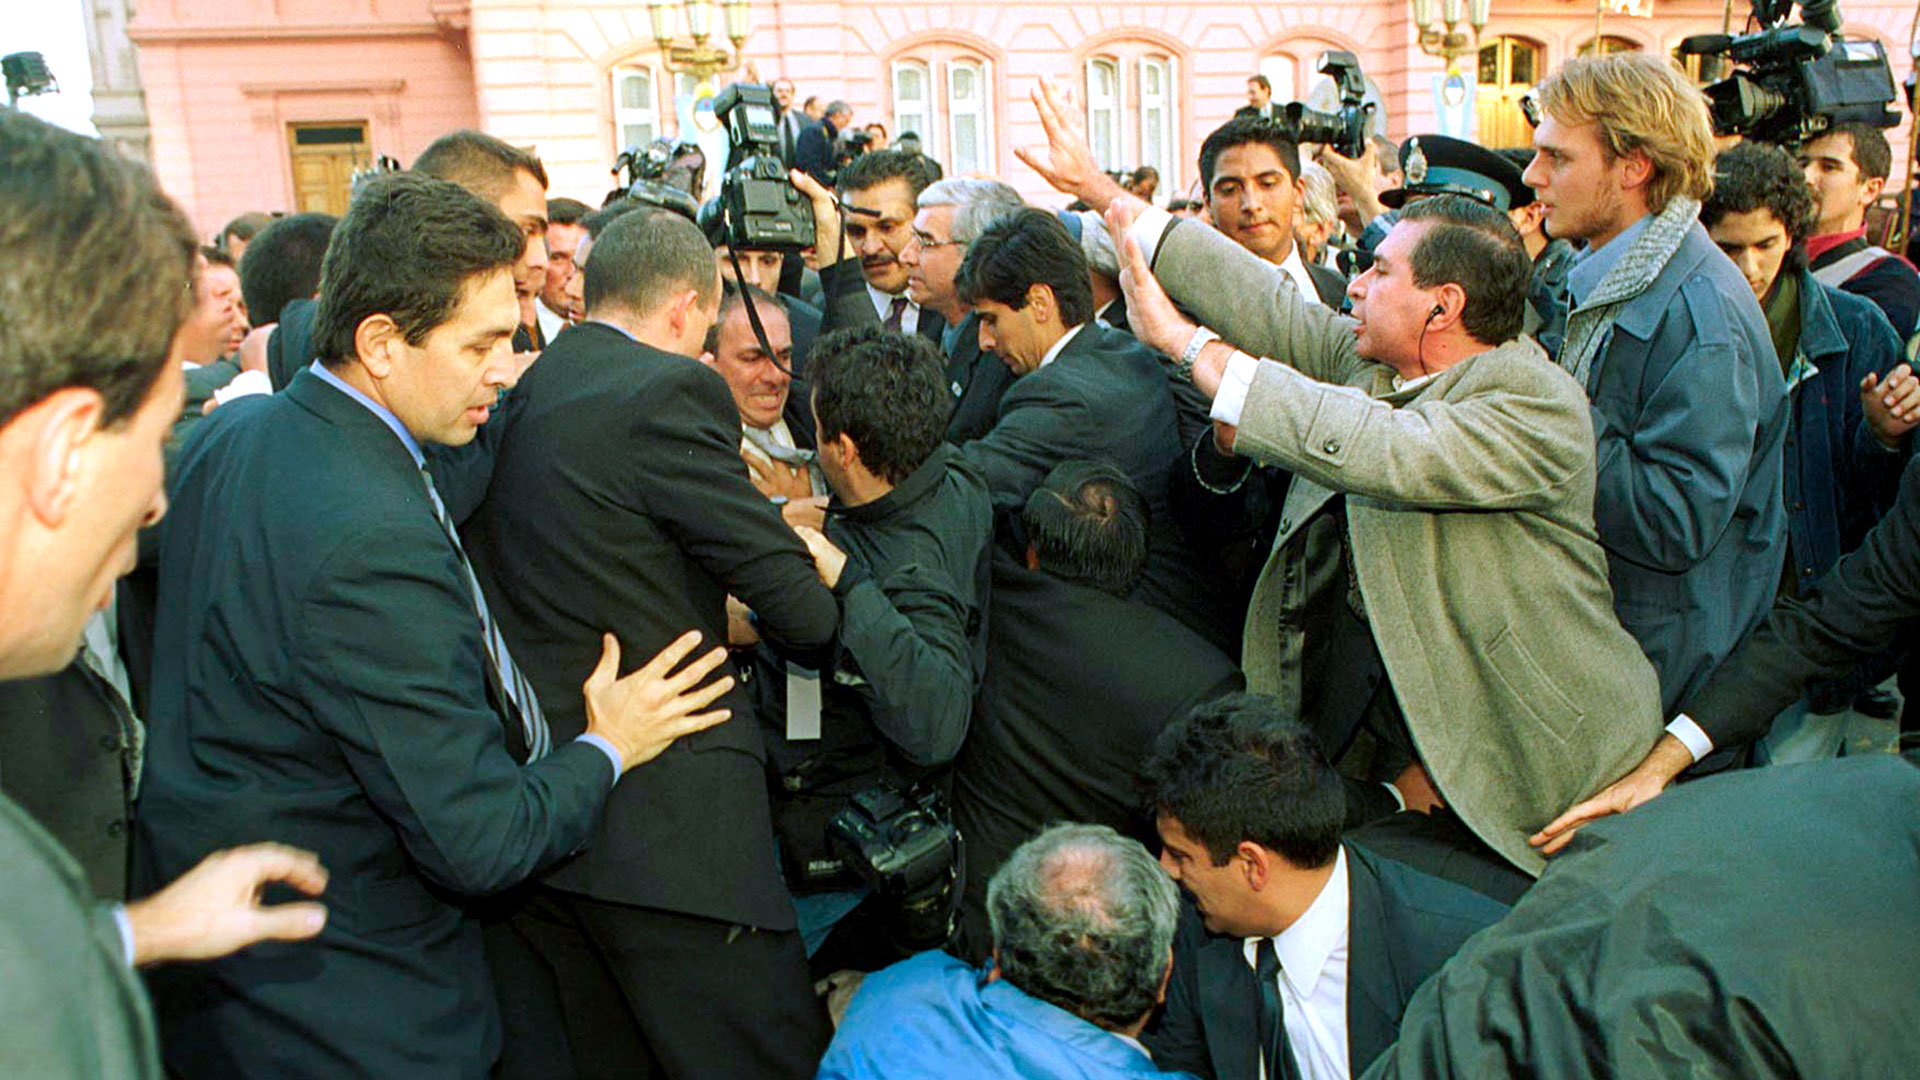 “Te cabeceé la cámara”, la historia del accidente entre un fotógrafo y Néstor Kirchner el día de su asunción como presidente